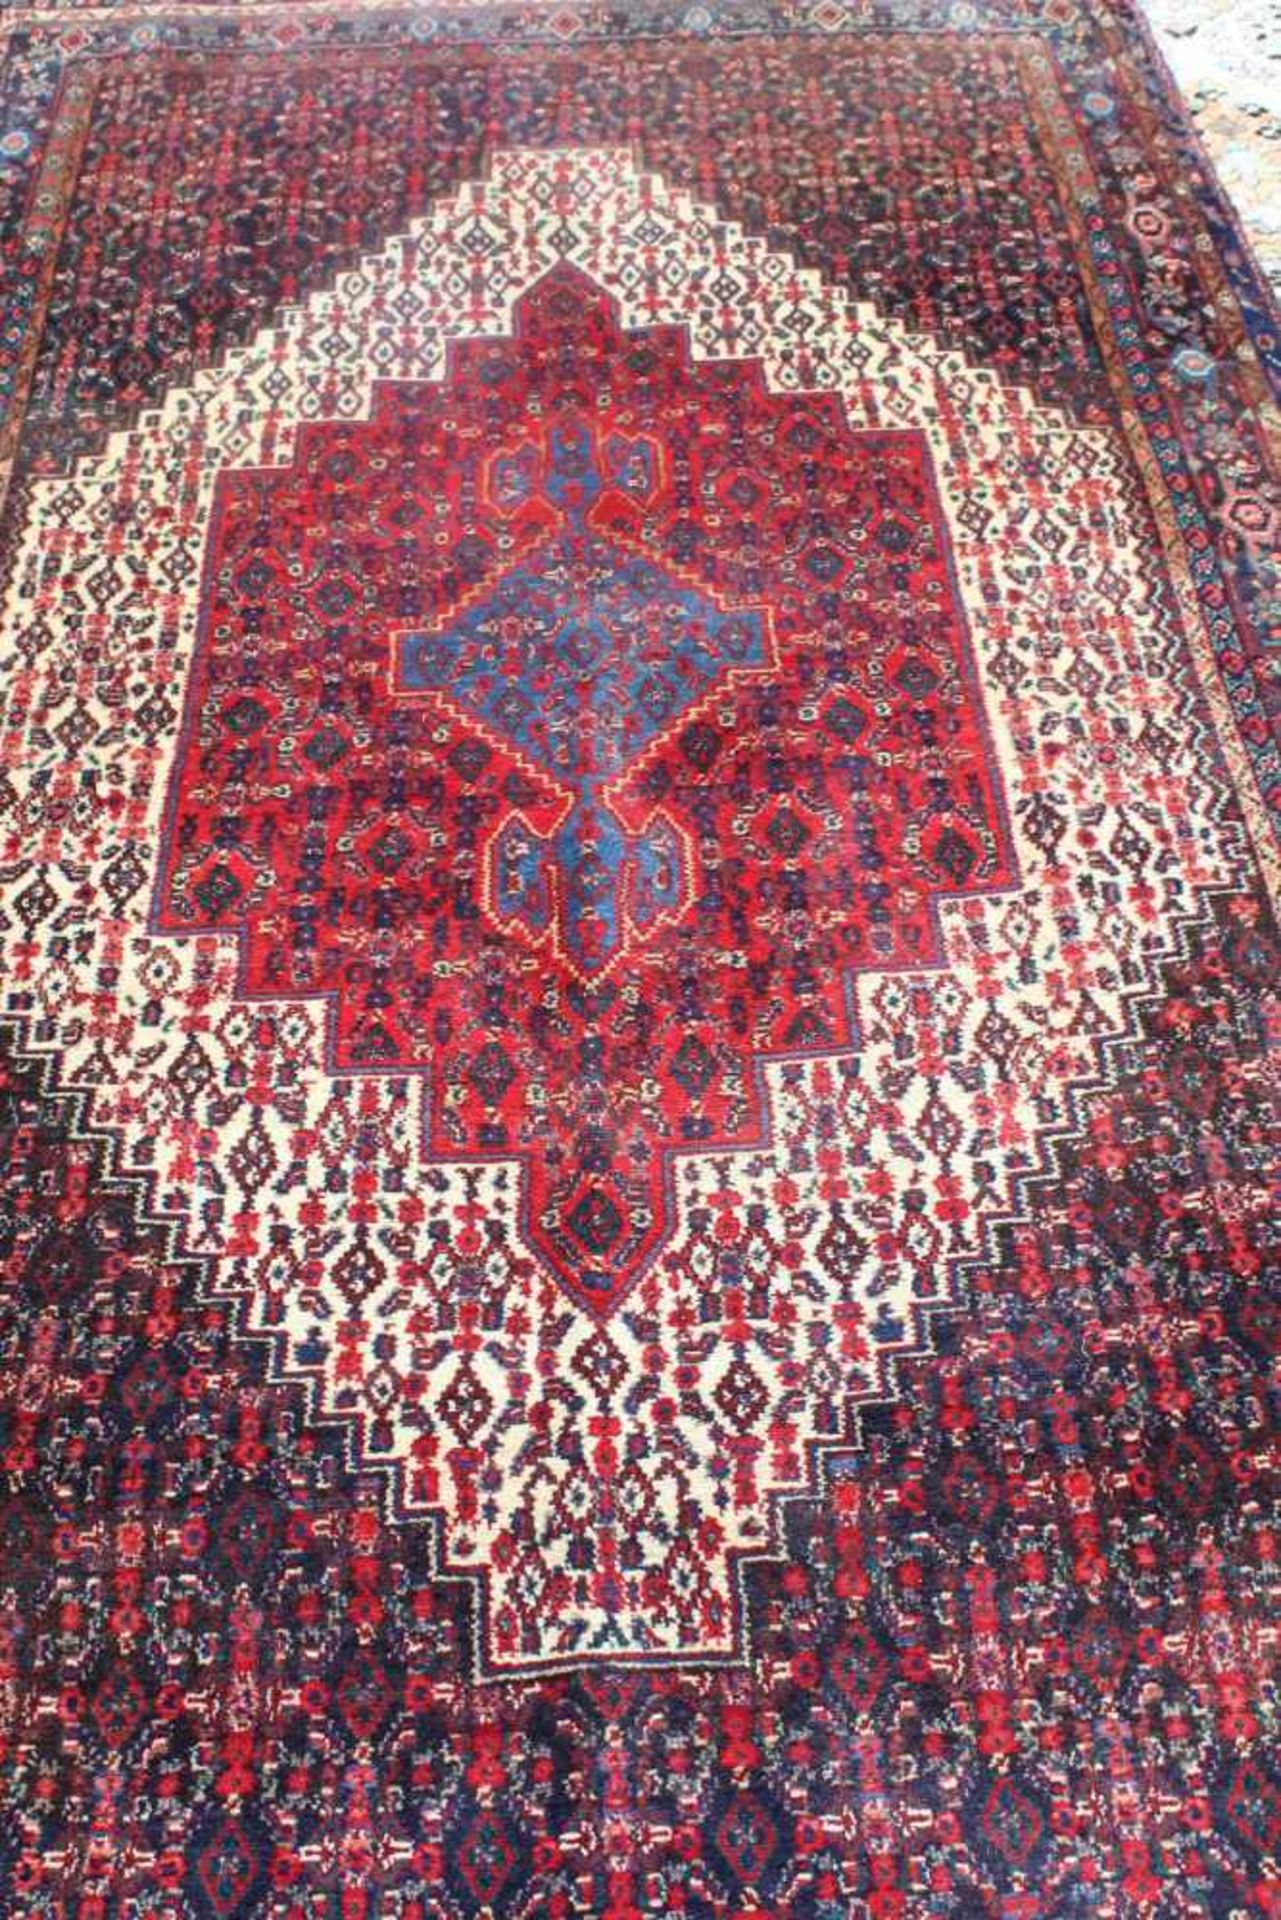 Senneh-Teppich aus West PersienAntik, Wolle auf Baumwolle, Maße: 148 x 276 cm. Mit - Bild 2 aus 3